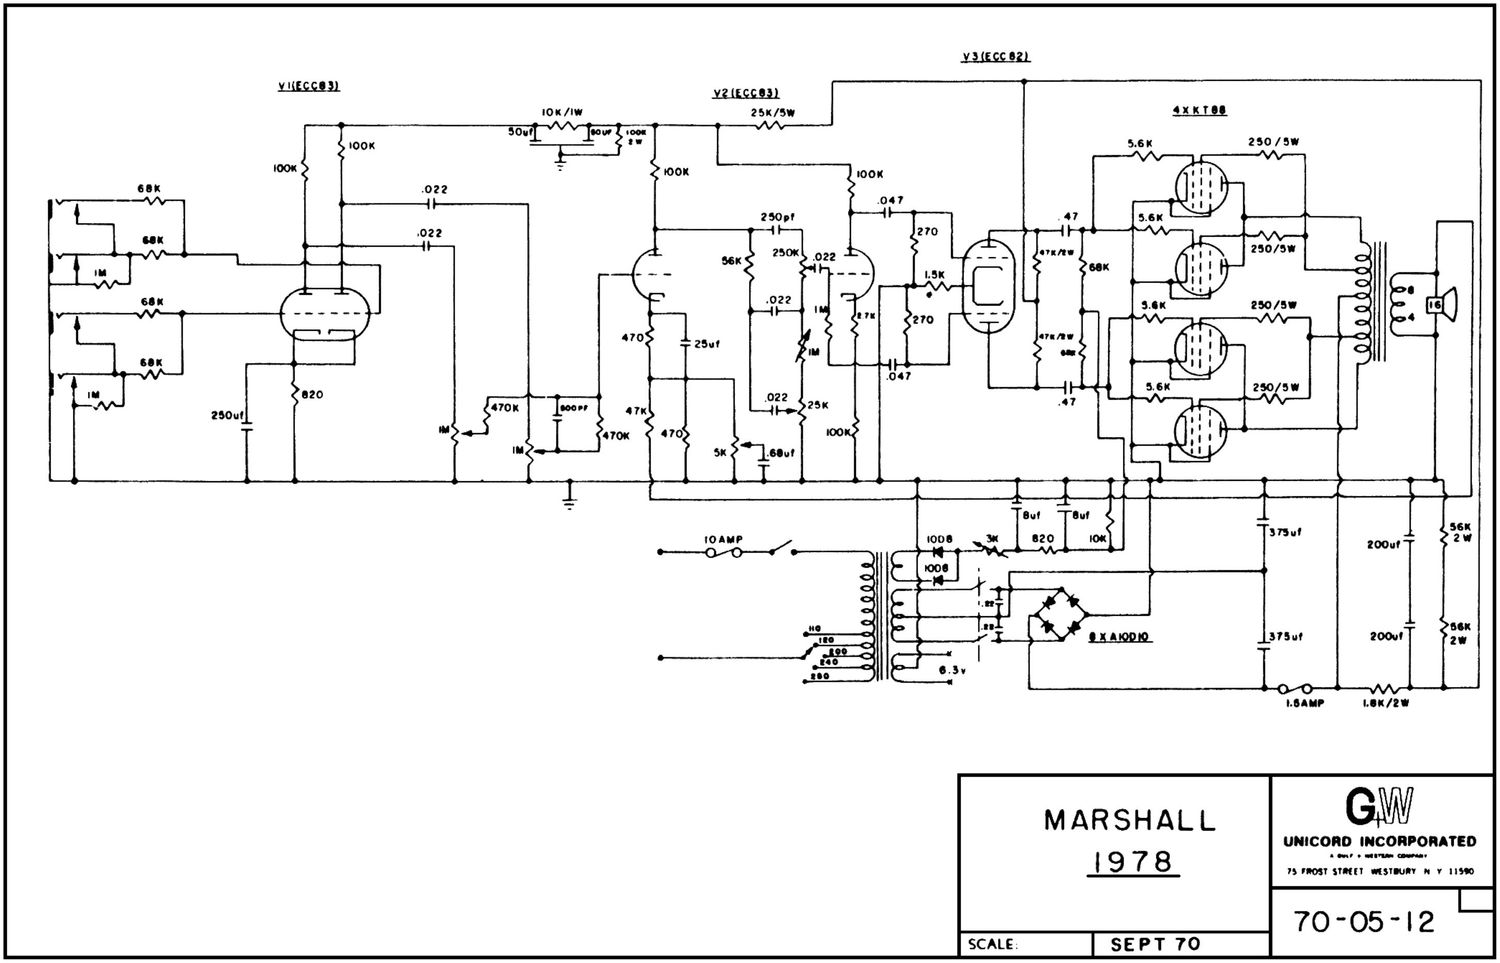 Marshall 1978 200 Watt Schematic